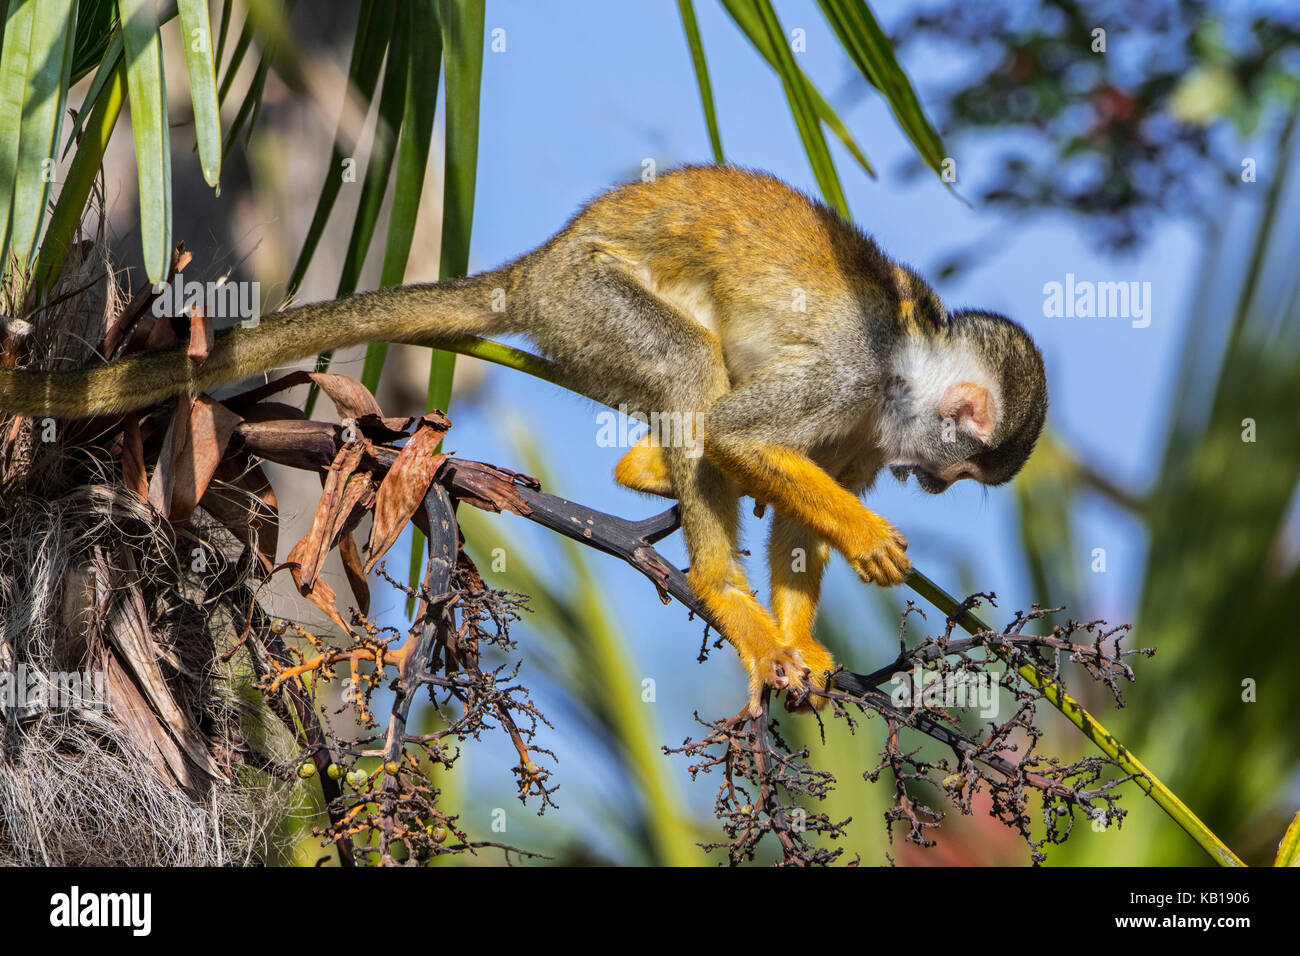 Nero-capped Scimmia di scoiattolo / peruviana di Scimmia di scoiattolo (Saimiri boliviensis peruviensis) rovistando nella struttura ad albero, originario del sud america Foto Stock